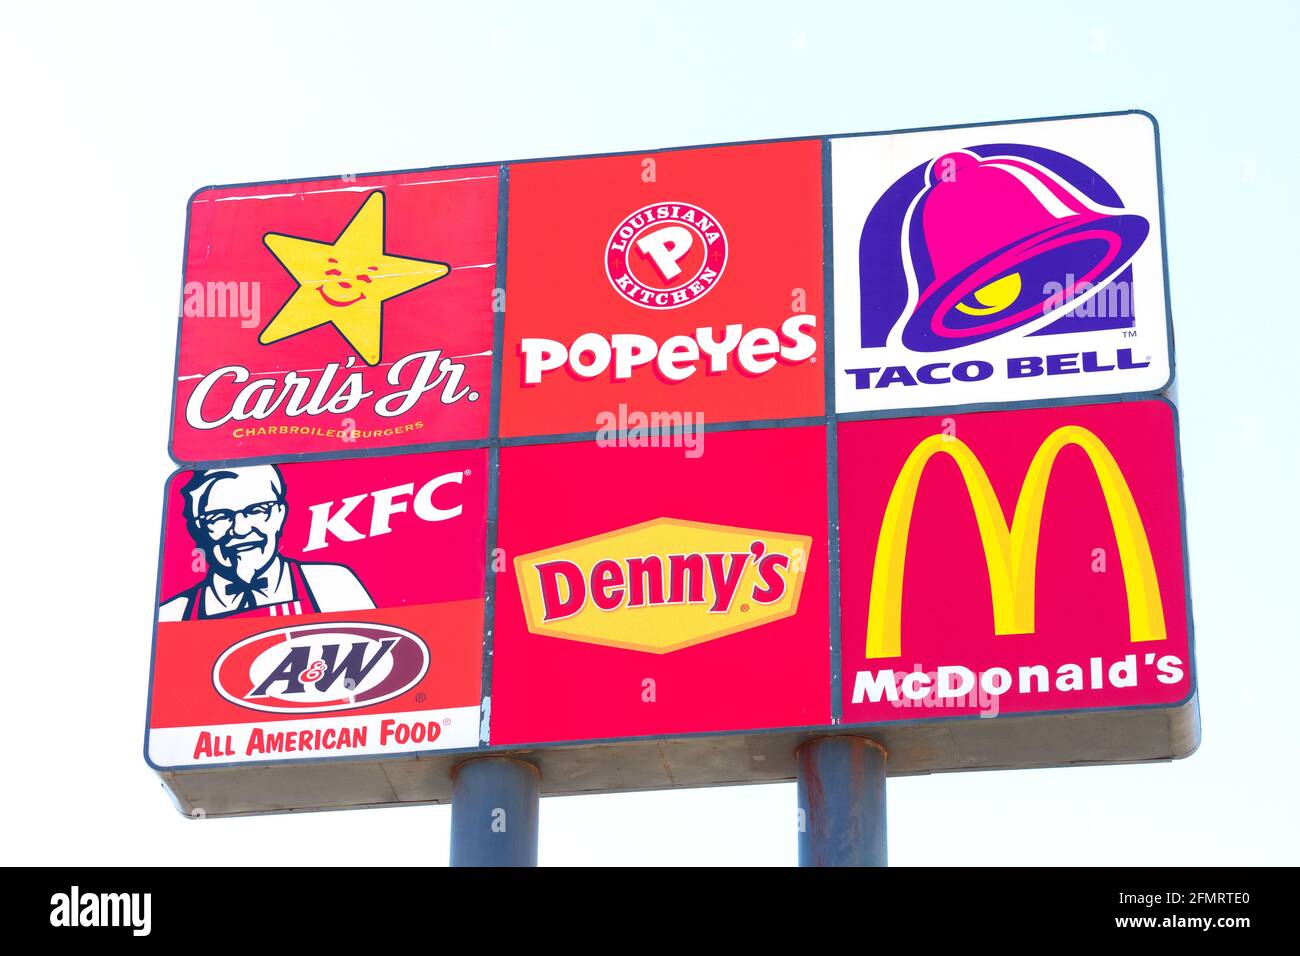 Les logos de carl's Jr., Popeyes, Taco Bell, KFC, Denny s et McDonald's sur le panneau de signalisation. Panneau publicitaire Interstate Highway. - Stockton, Banque D'Images